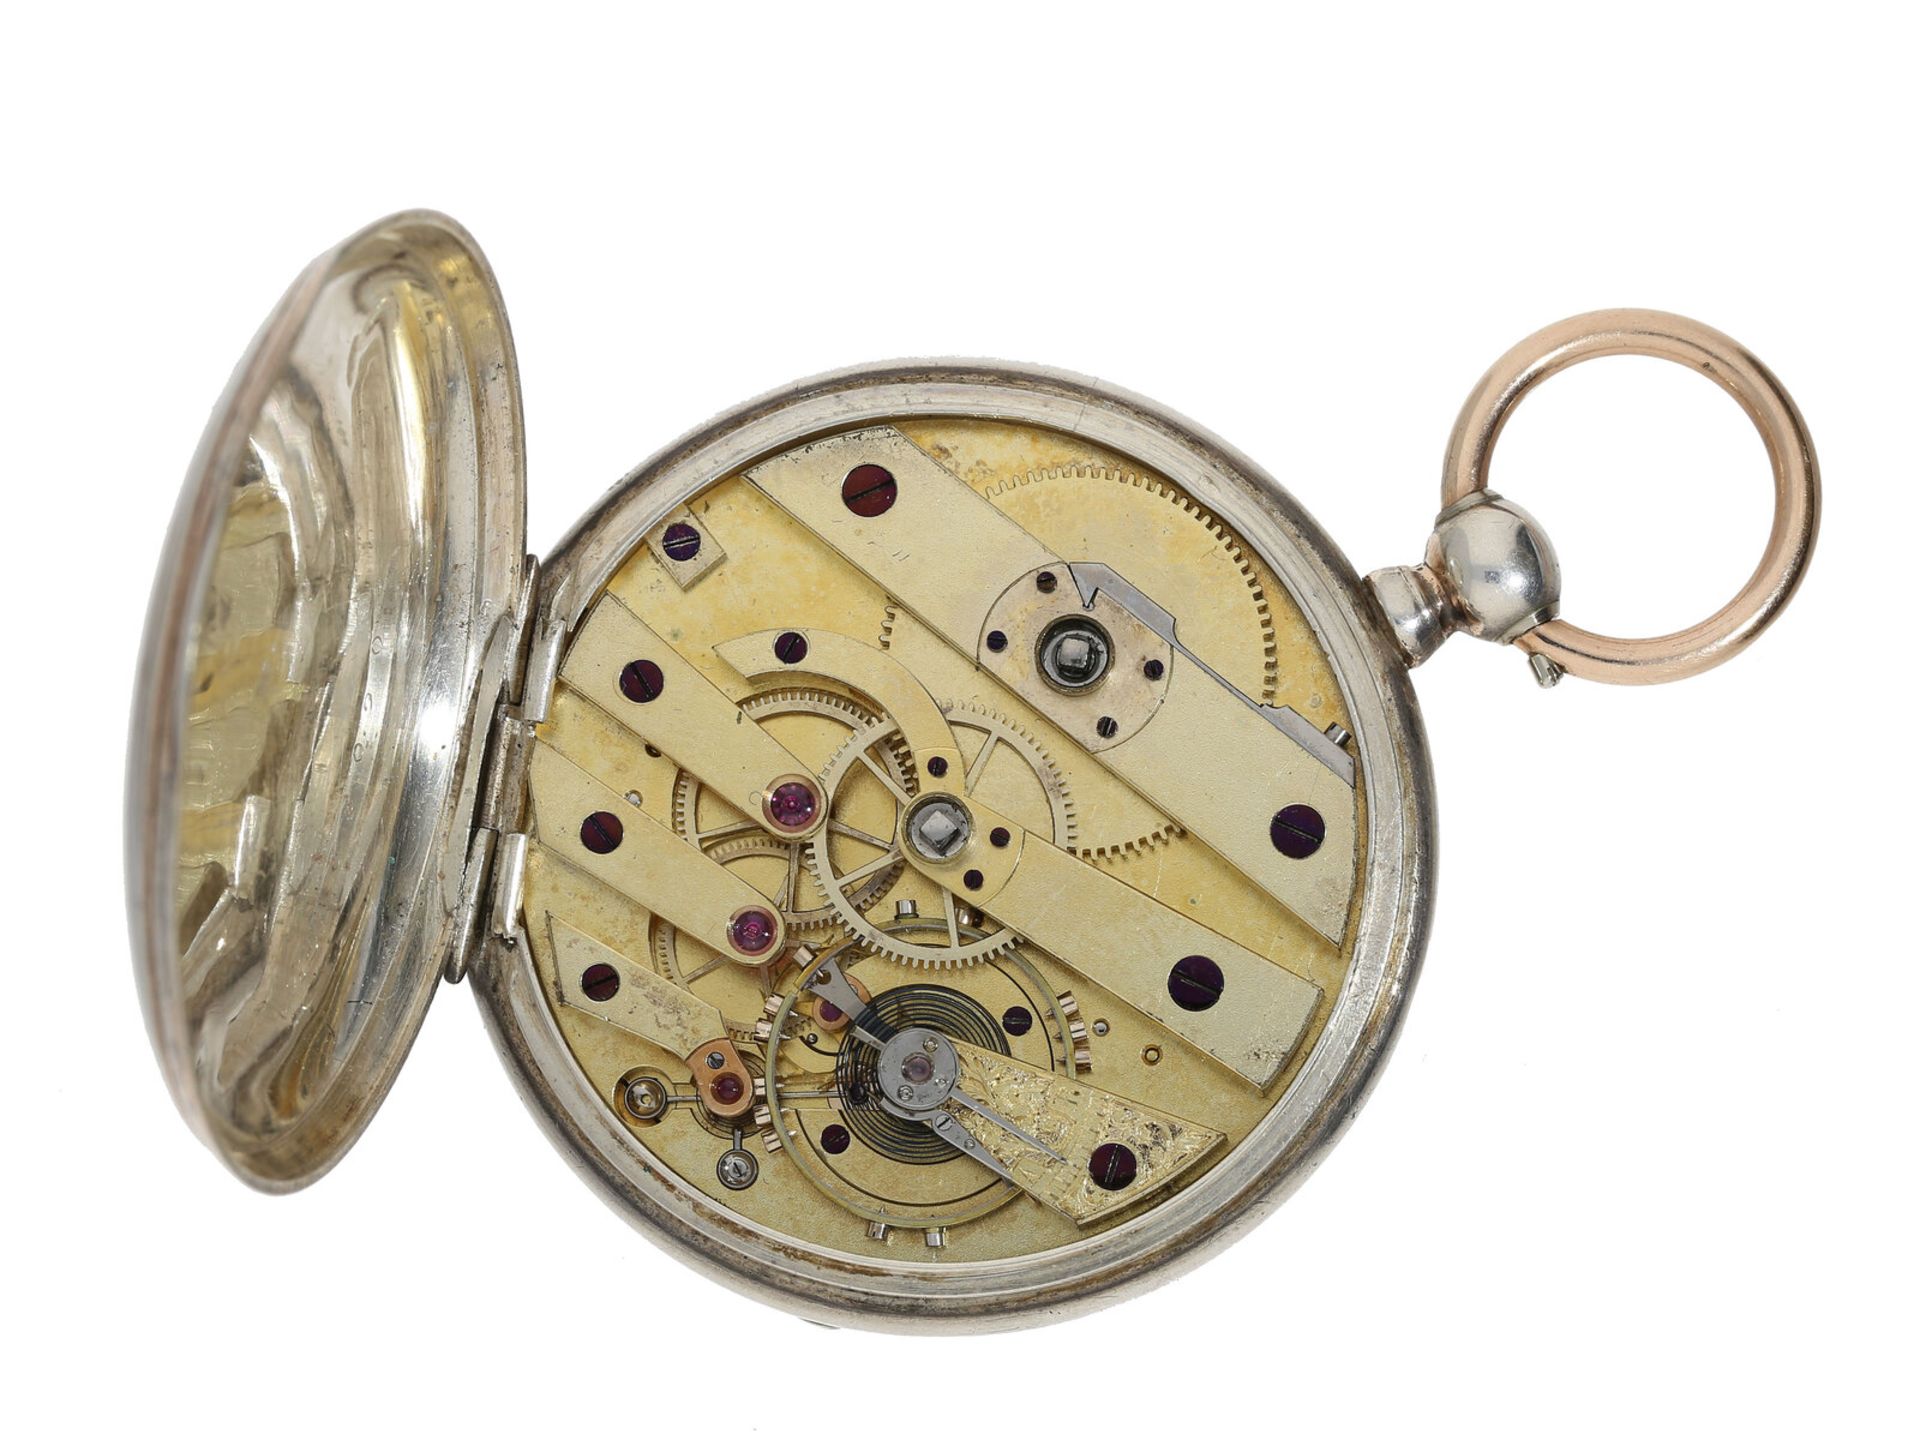 Taschenuhr: seltenes Wippen-Chronometer, um 1860, signiert Carl Möller Kjöbenhavn (Copenhagen), - Bild 3 aus 3